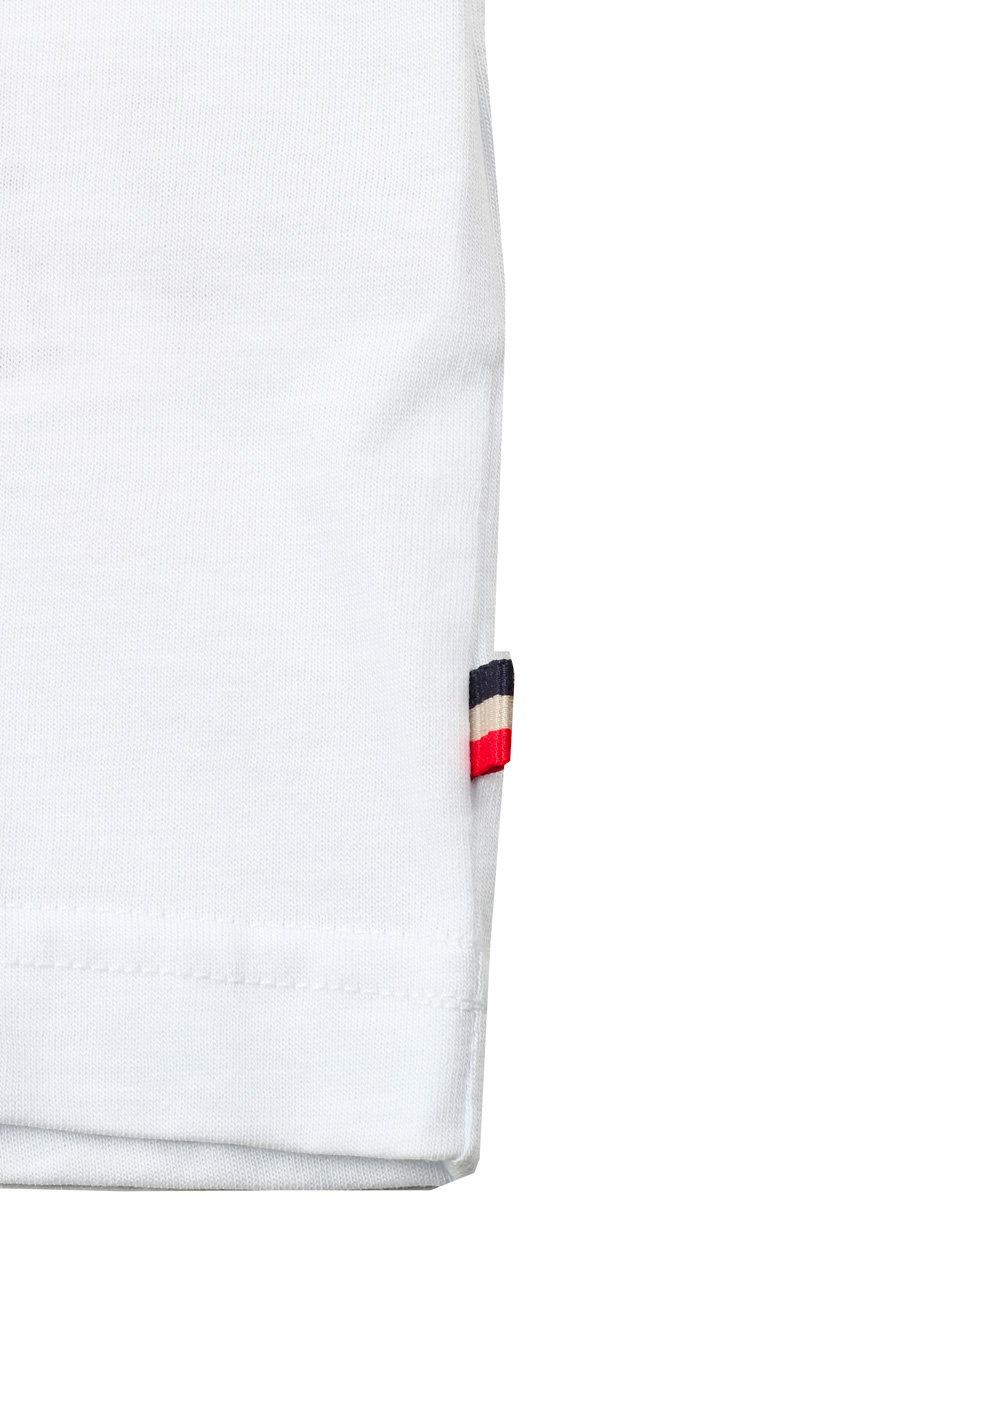 Moncler Crew Neck Tee White Shirt Size M / 38R U.S. | Costume Limité